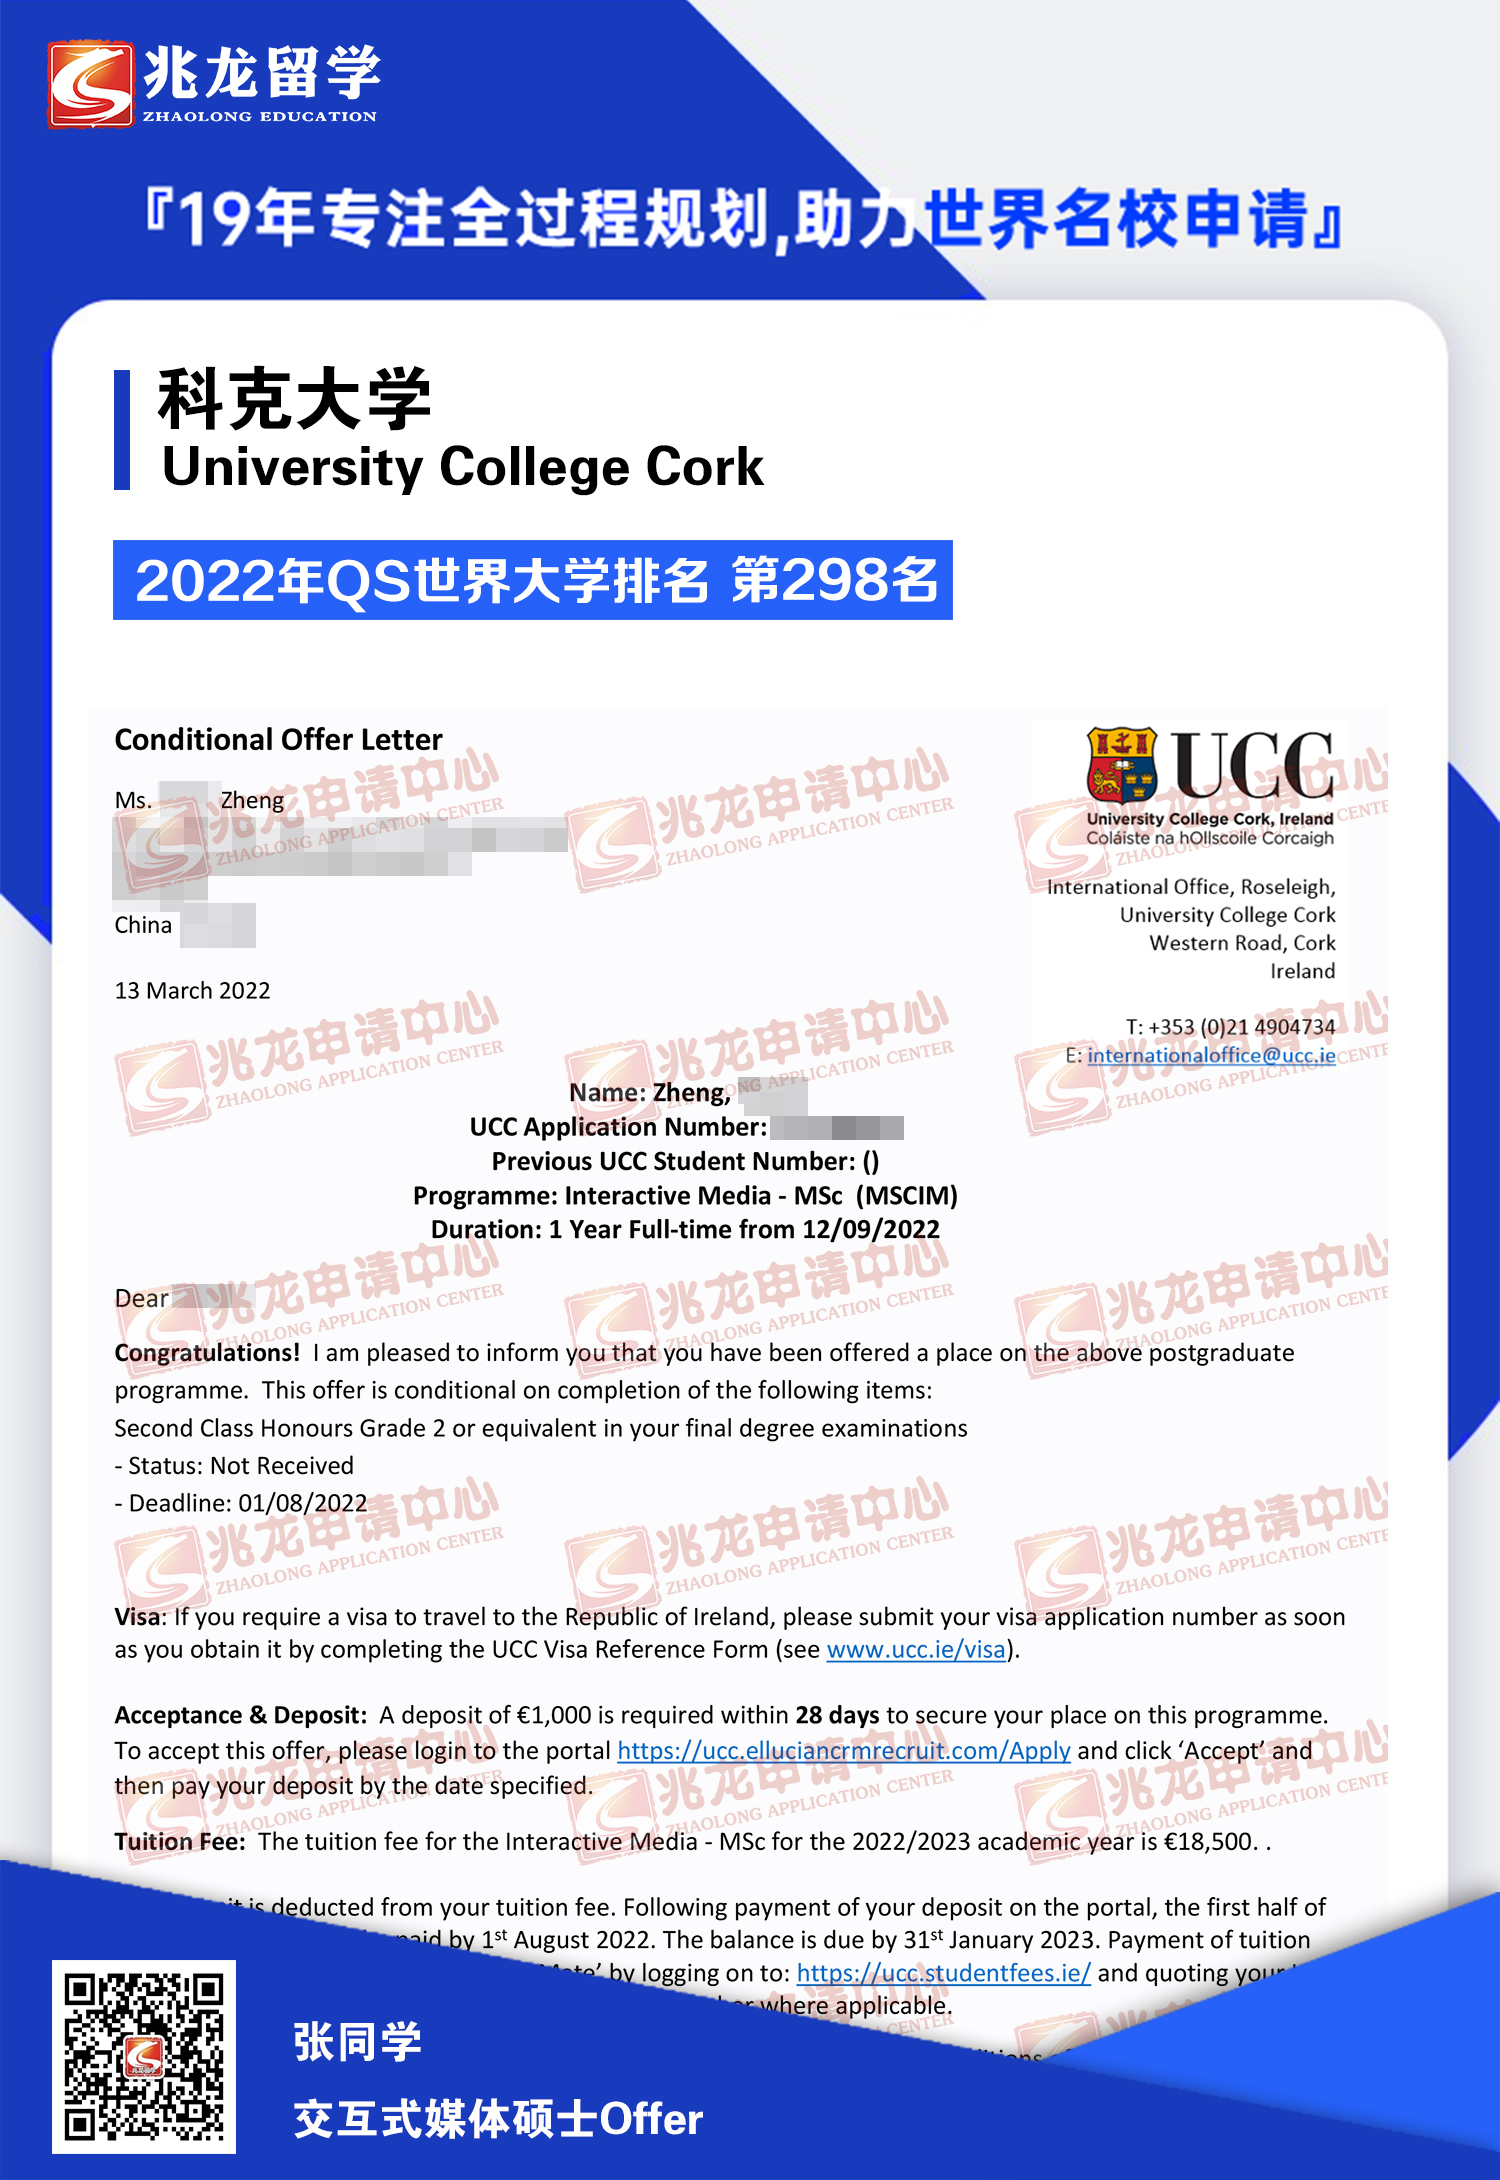 郑yunxi-爱尔兰-科克大学-交互式媒体-硕士offer-兆龙留学.jpg